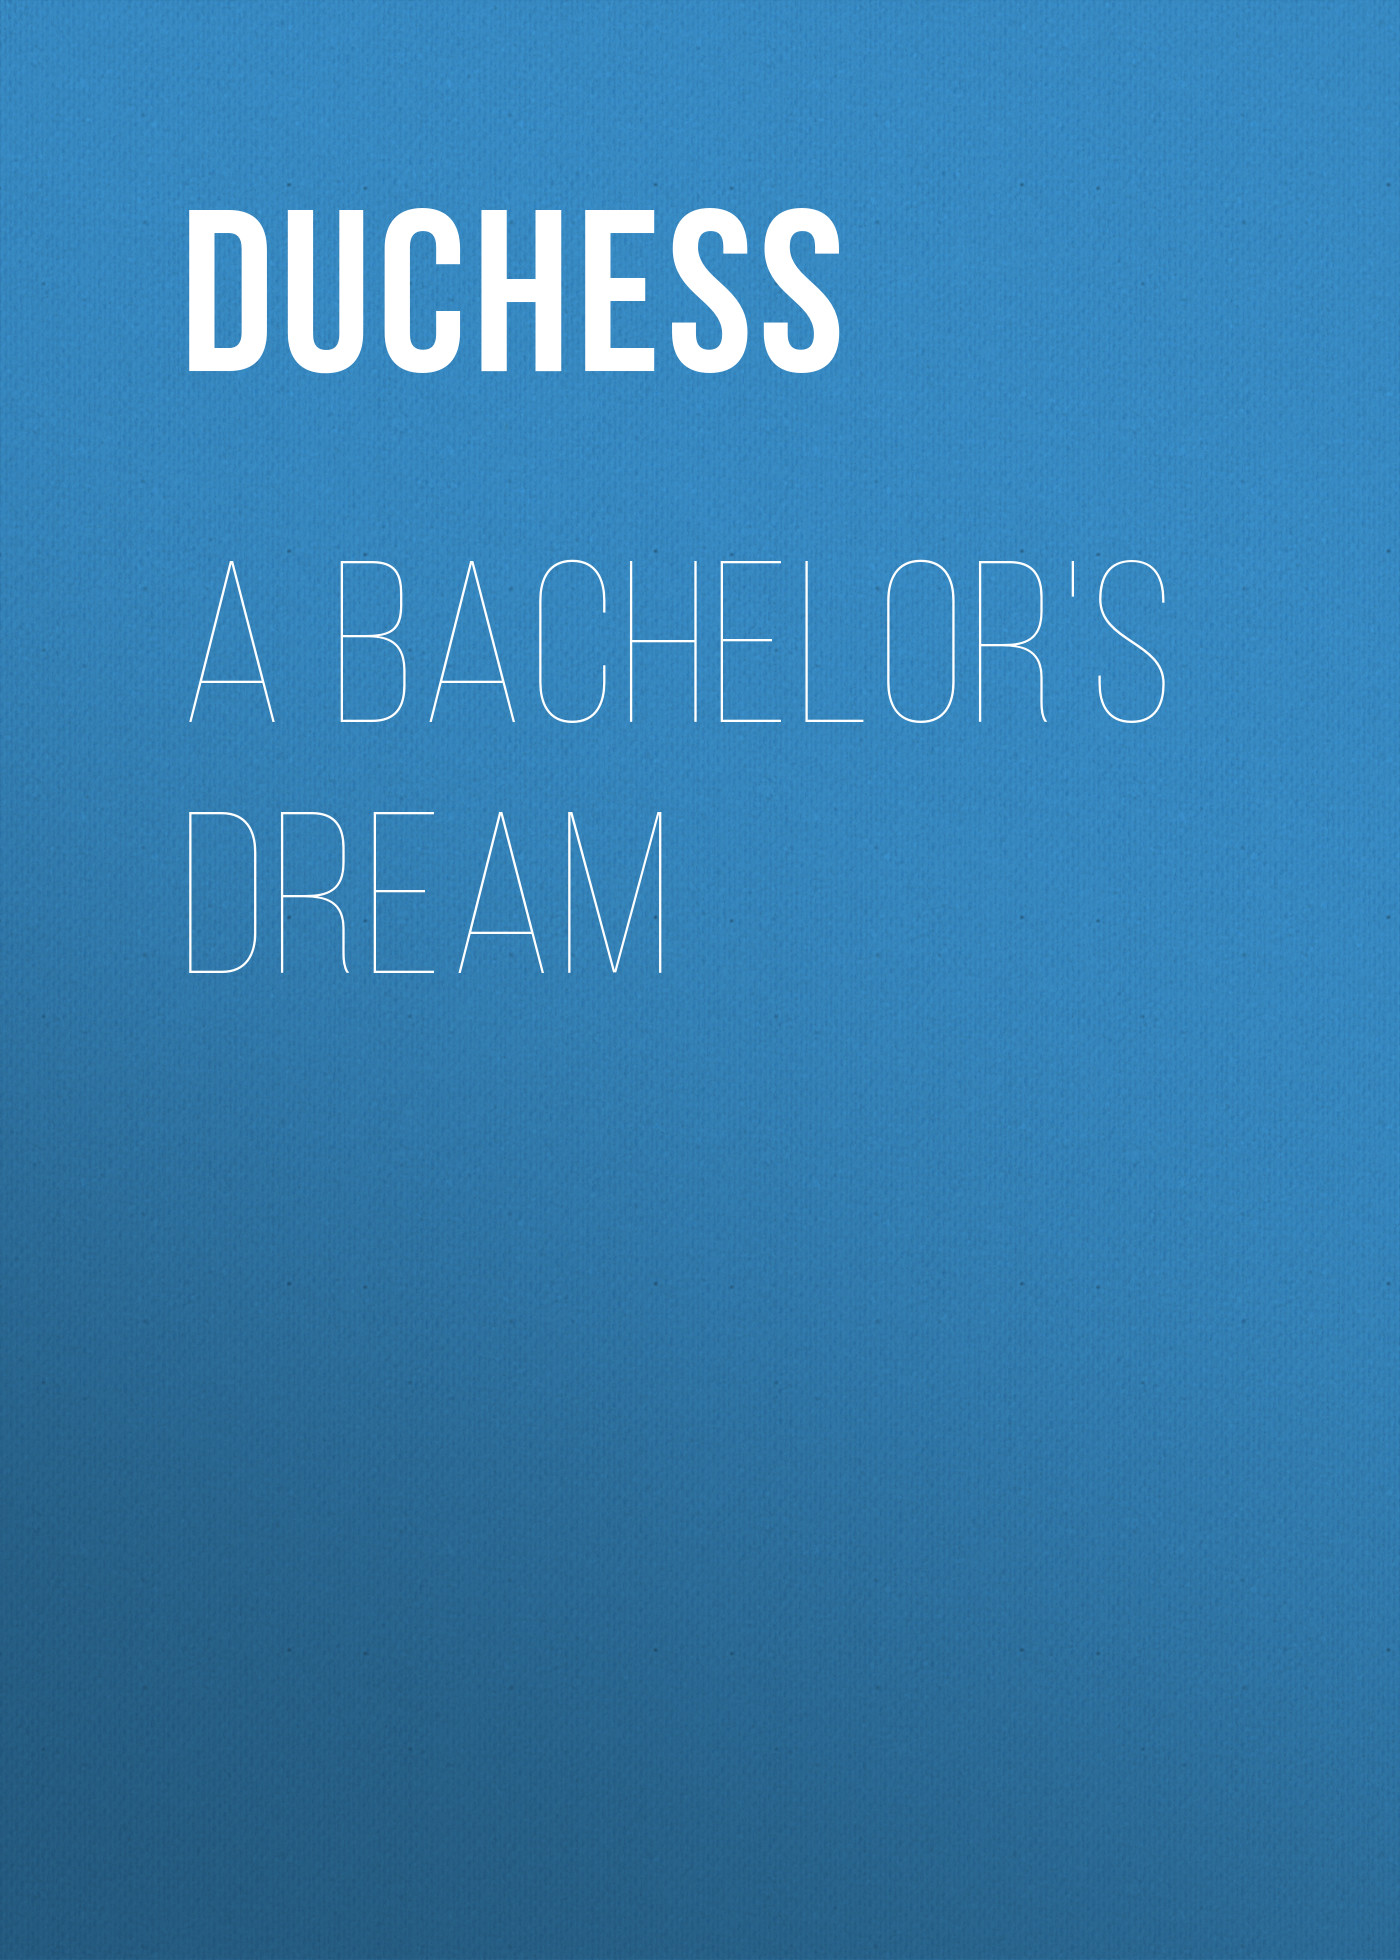 Книга A Bachelor's Dream из серии , созданная  Duchess, может относится к жанру Зарубежная старинная литература, Зарубежная классика, Зарубежная фантастика. Стоимость электронной книги A Bachelor's Dream с идентификатором 24621229 составляет 0 руб.